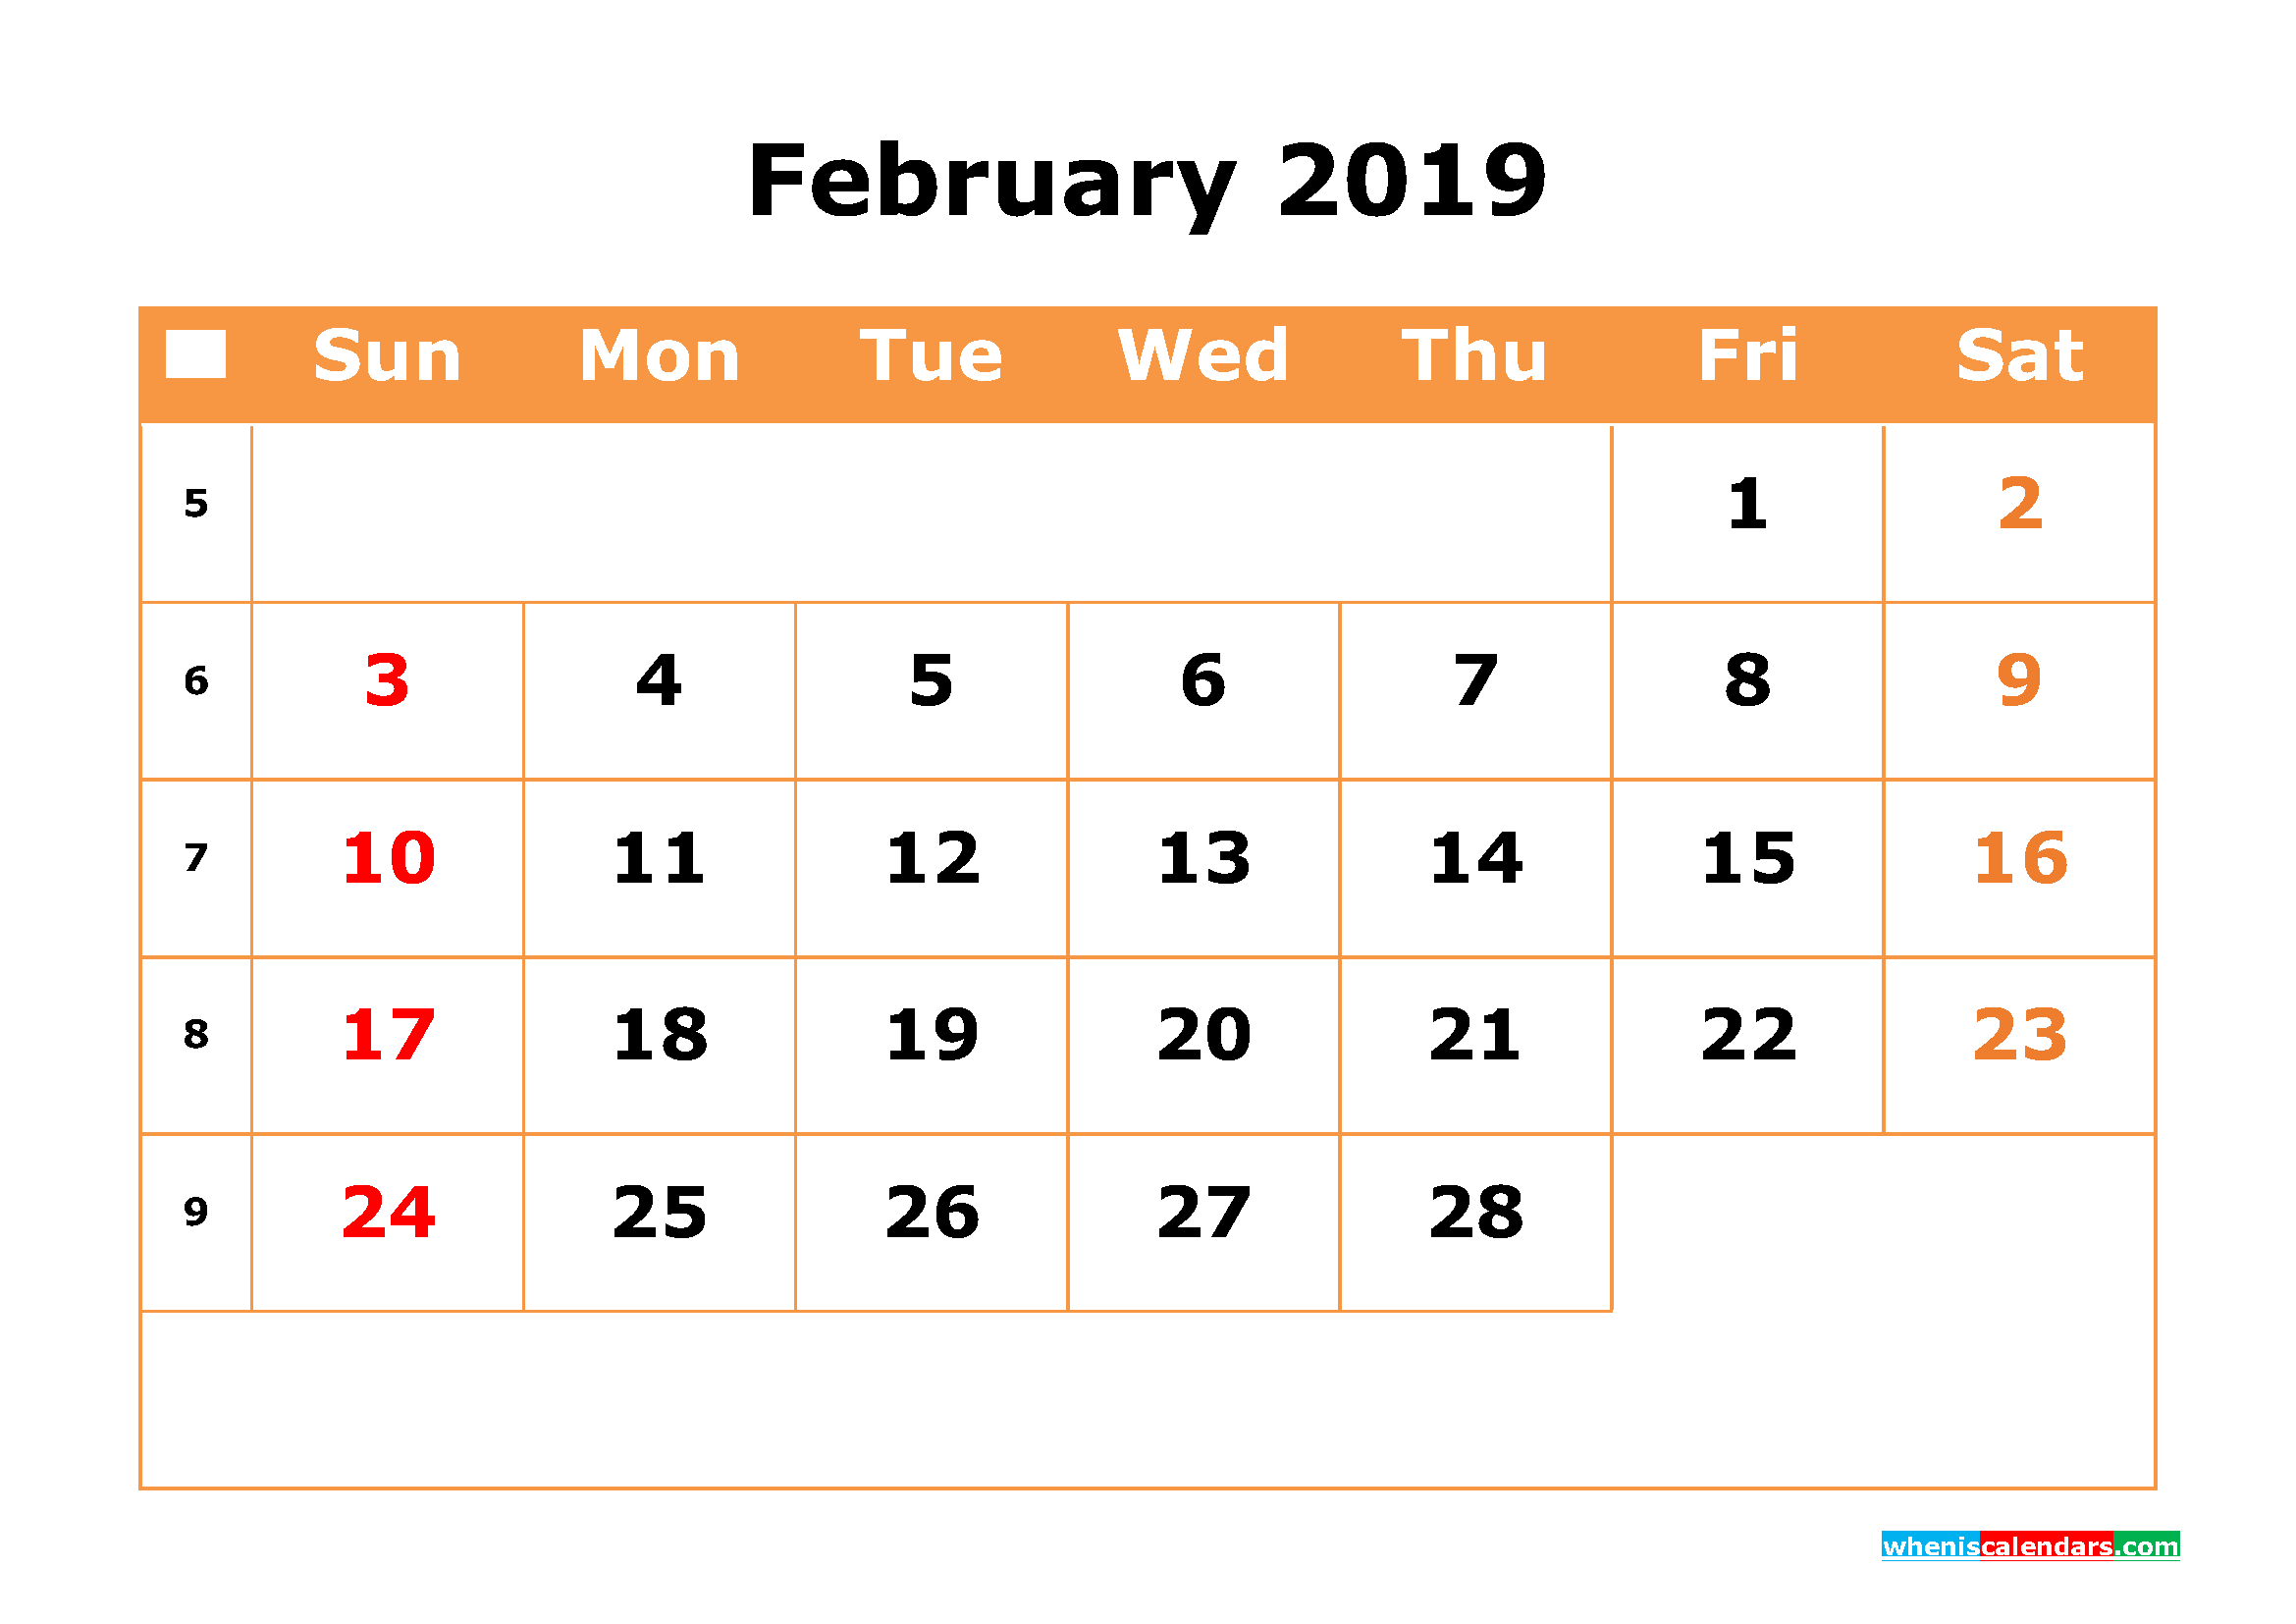 February Calendar 2019 #February #February2019 #